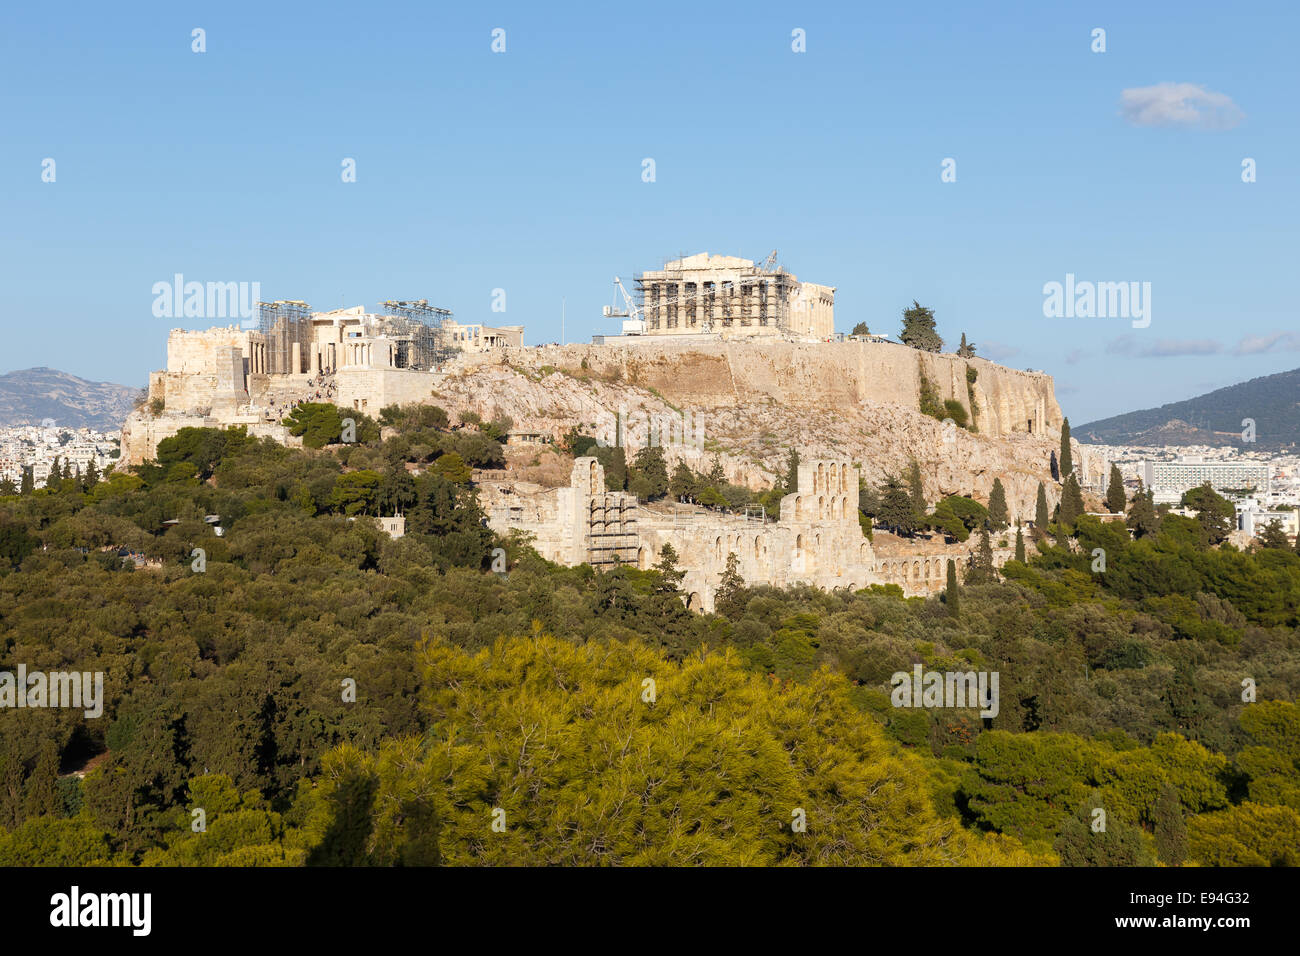 Parthenon temple on the Acropolis of Athens, dedicated to the maiden goddess Athena Stock Photo